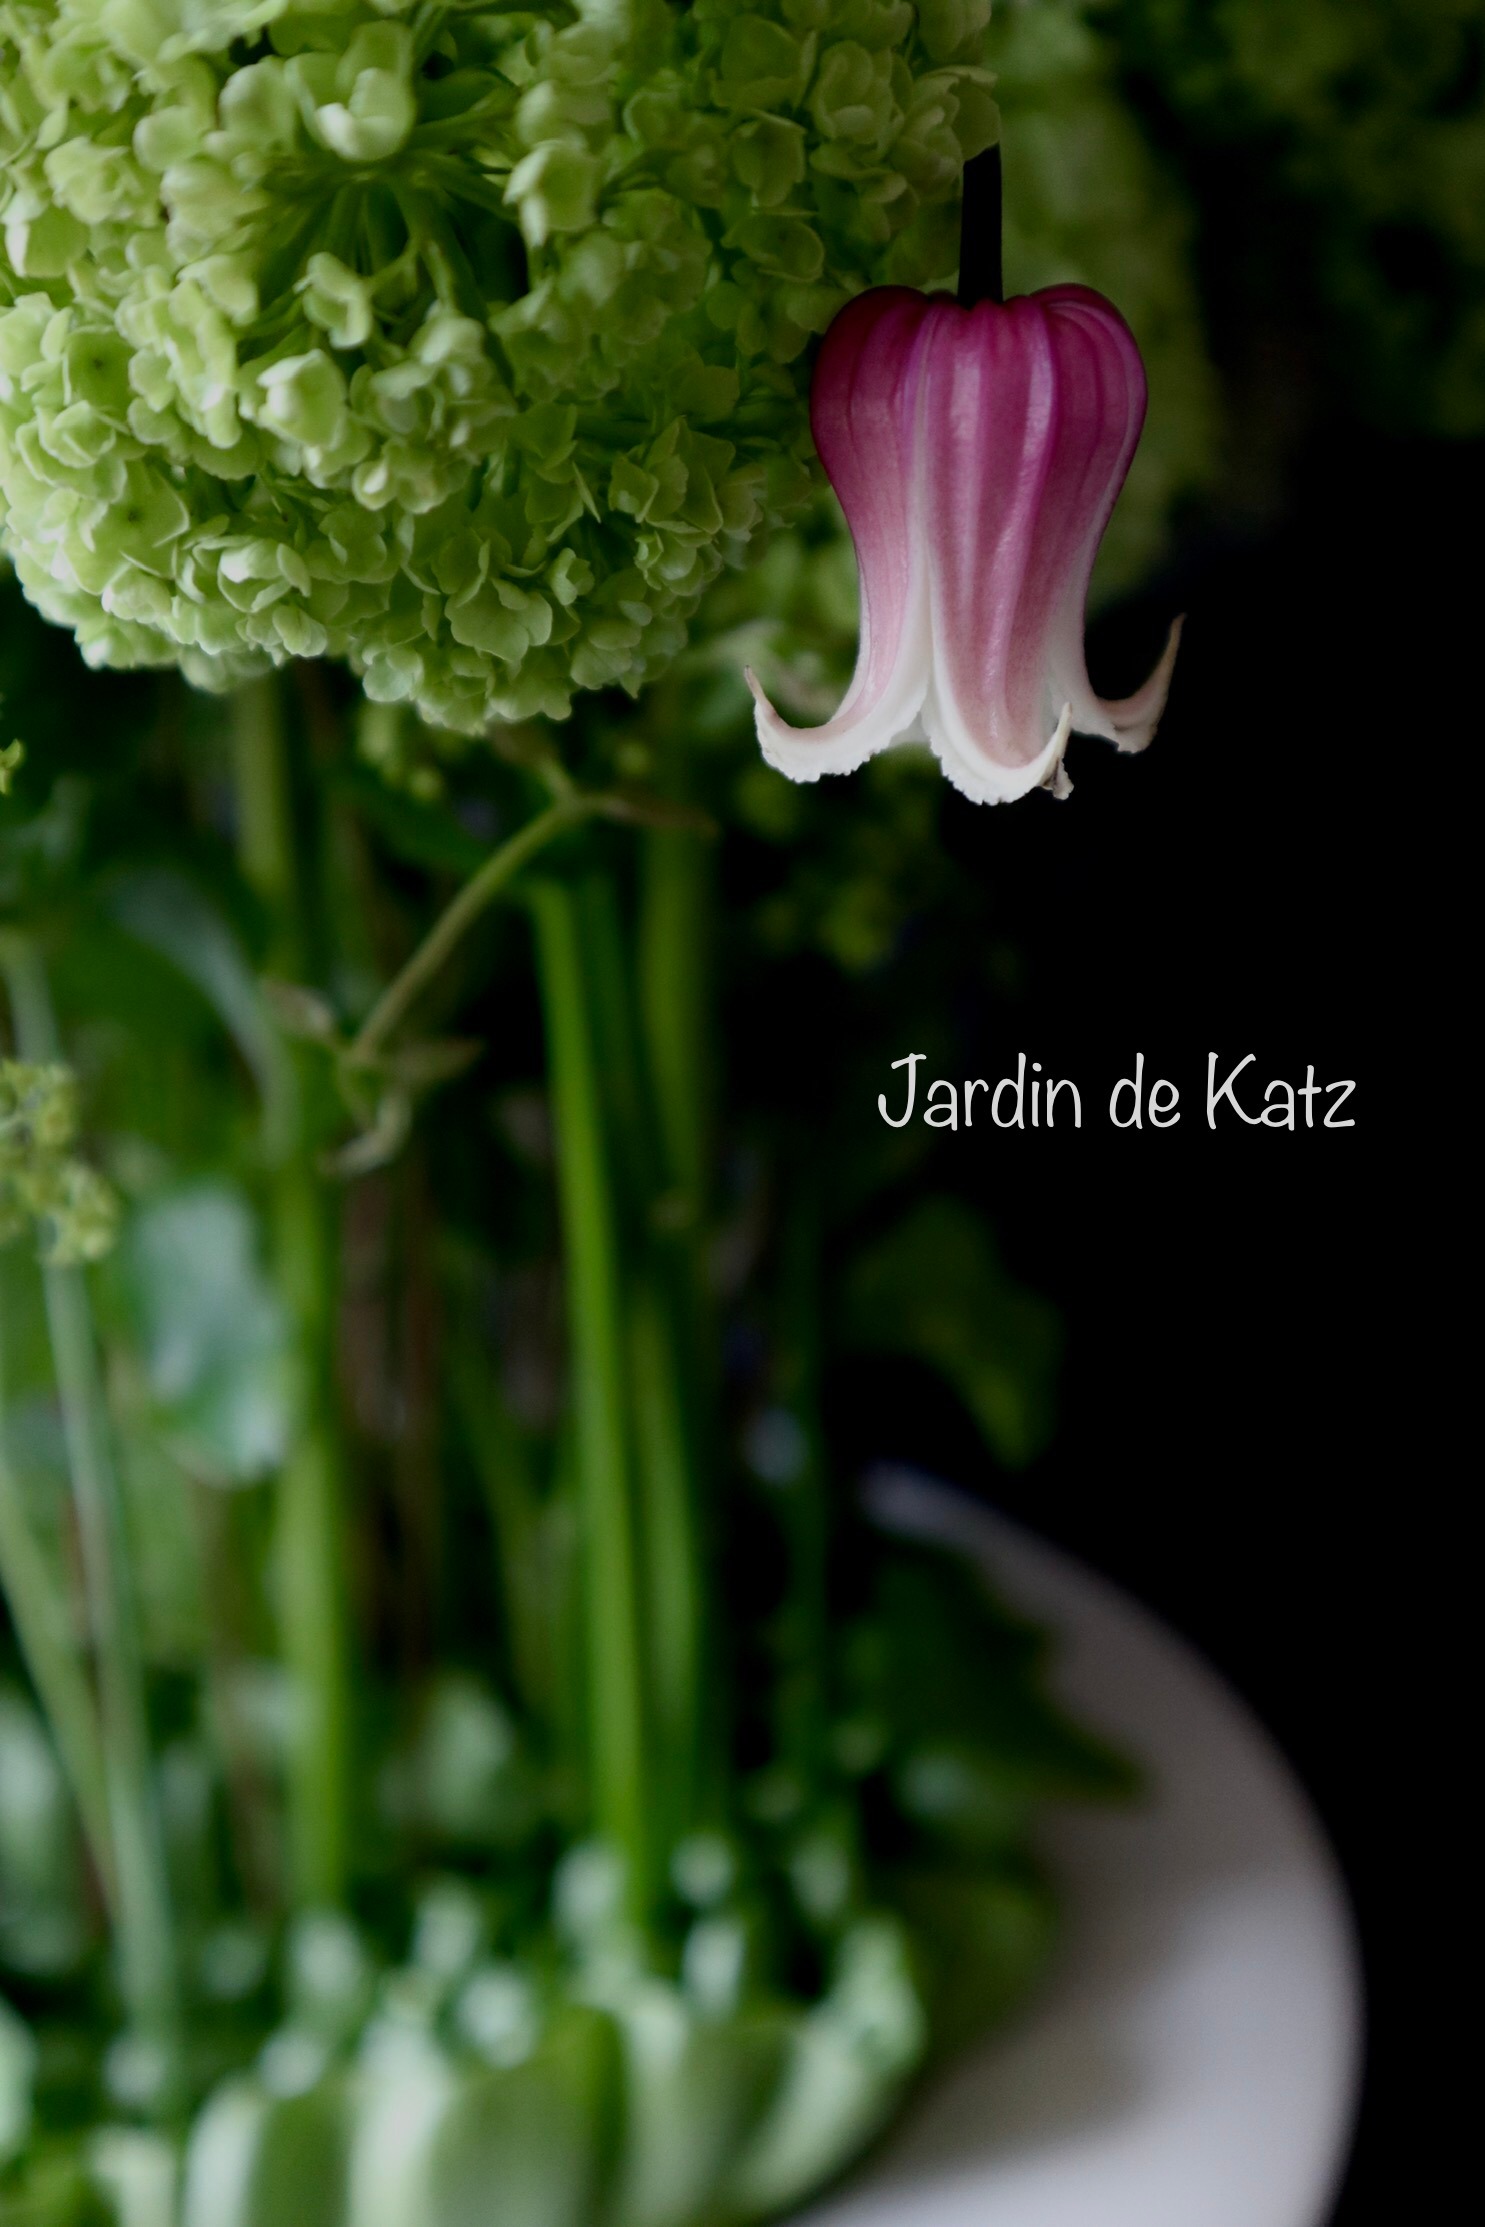 Jardin de Katz produced by hiro Nakajoh